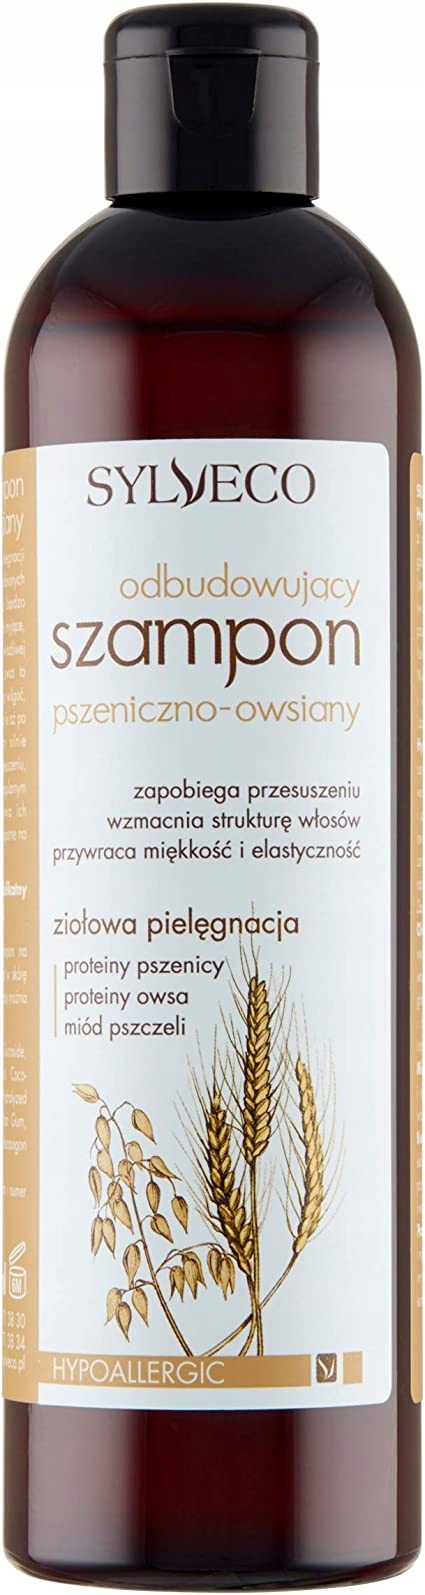 Sylveco szampon pszeniczno - owsiany 300 ml